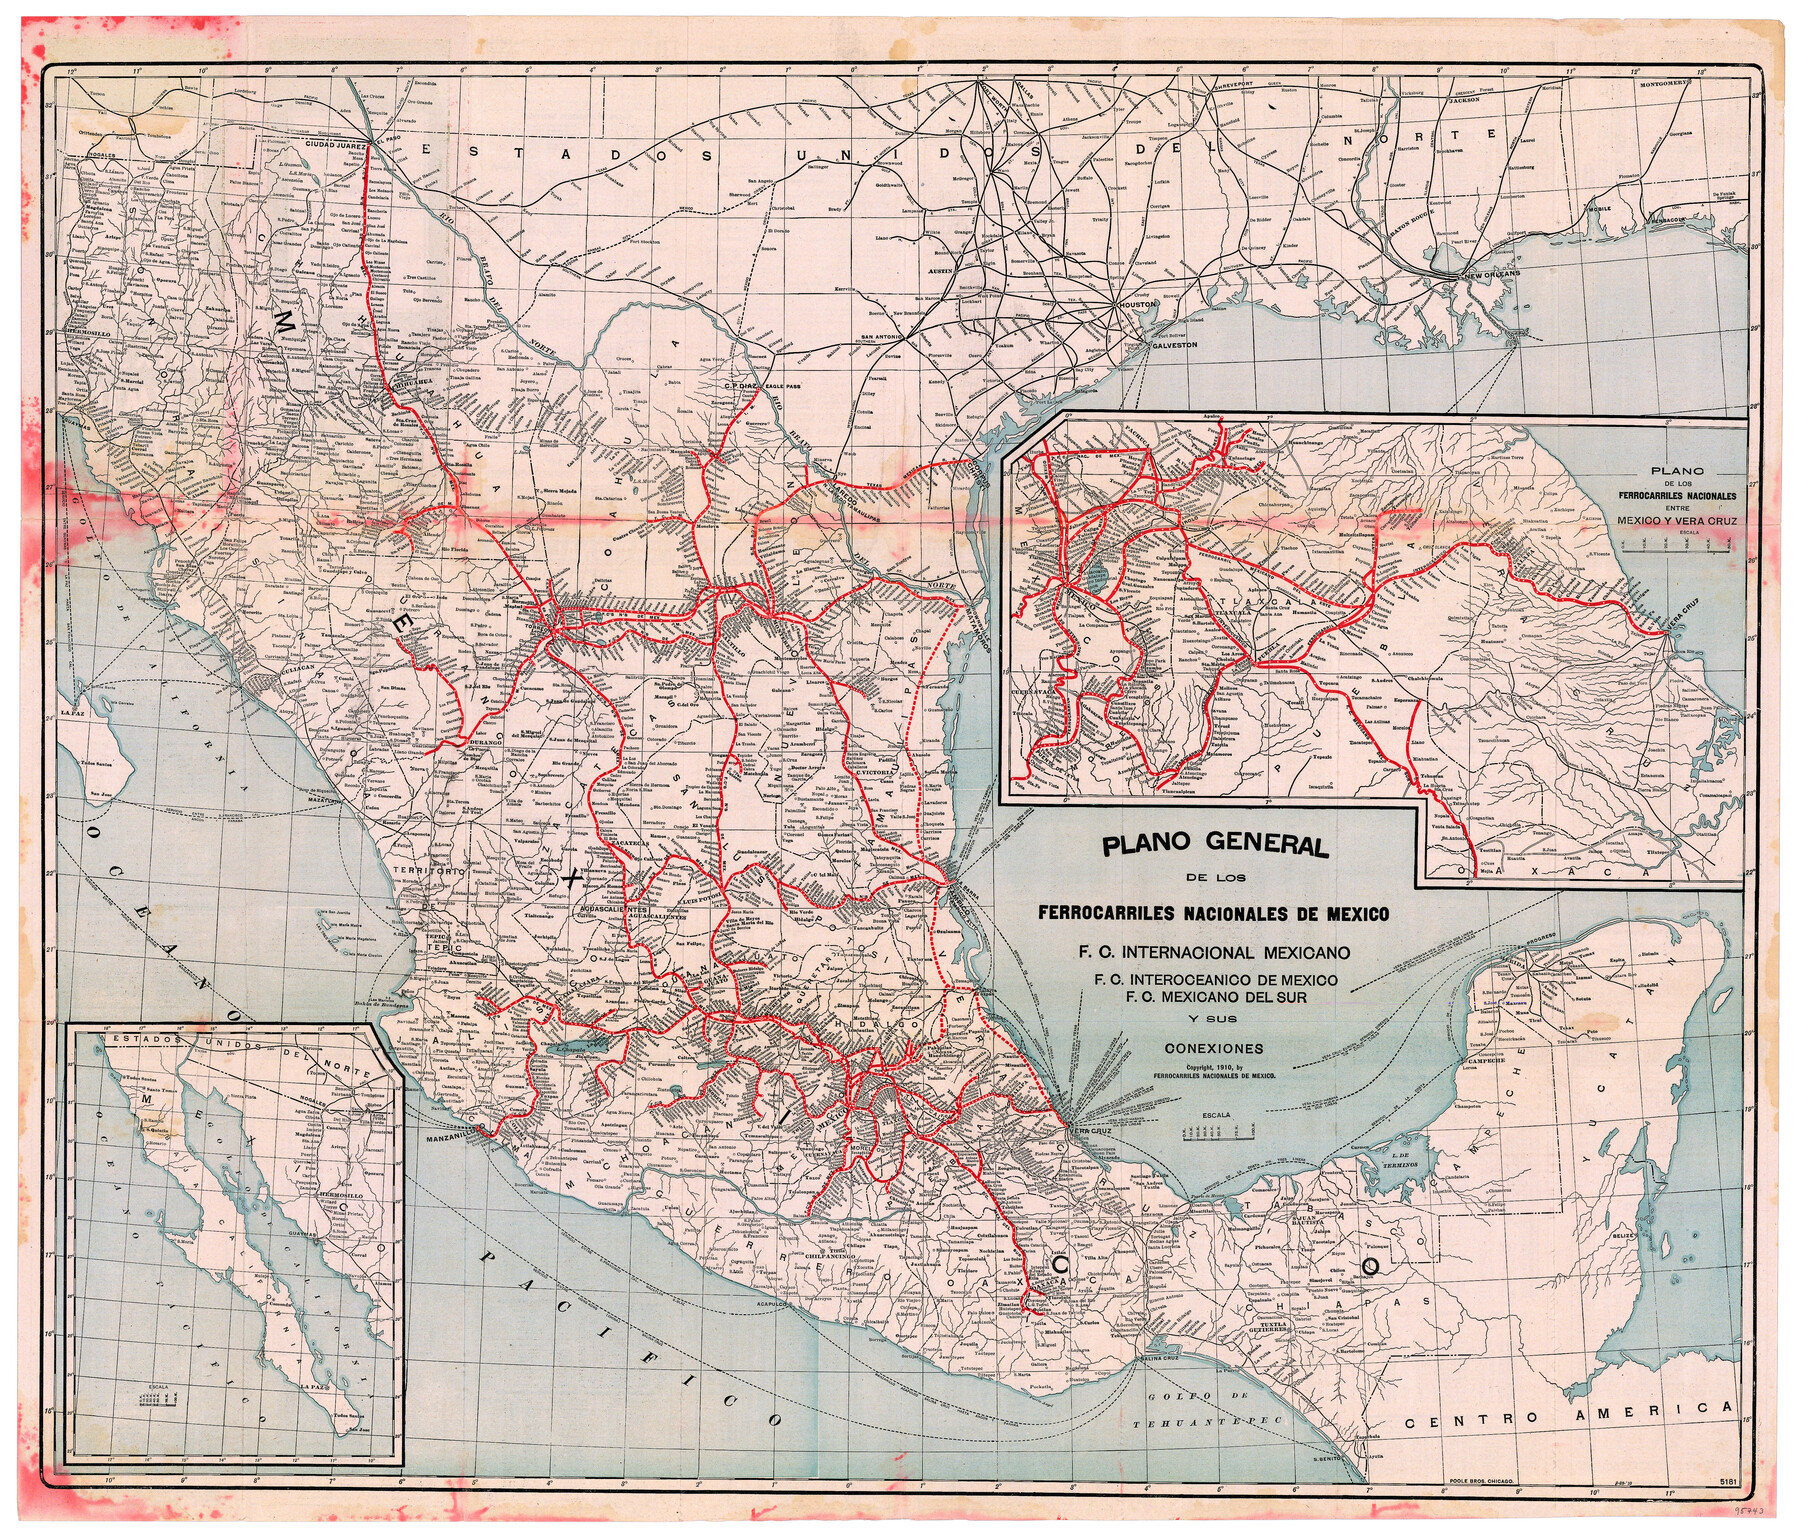 95743, Plano General de los Ferrocarriles Nacionales de Mexico, F.C. Internacional Mexicano, F.C. Interoceanico de Mexico, F.C. Mexicano del sur y sus Conexiones, General Map Collection - 1